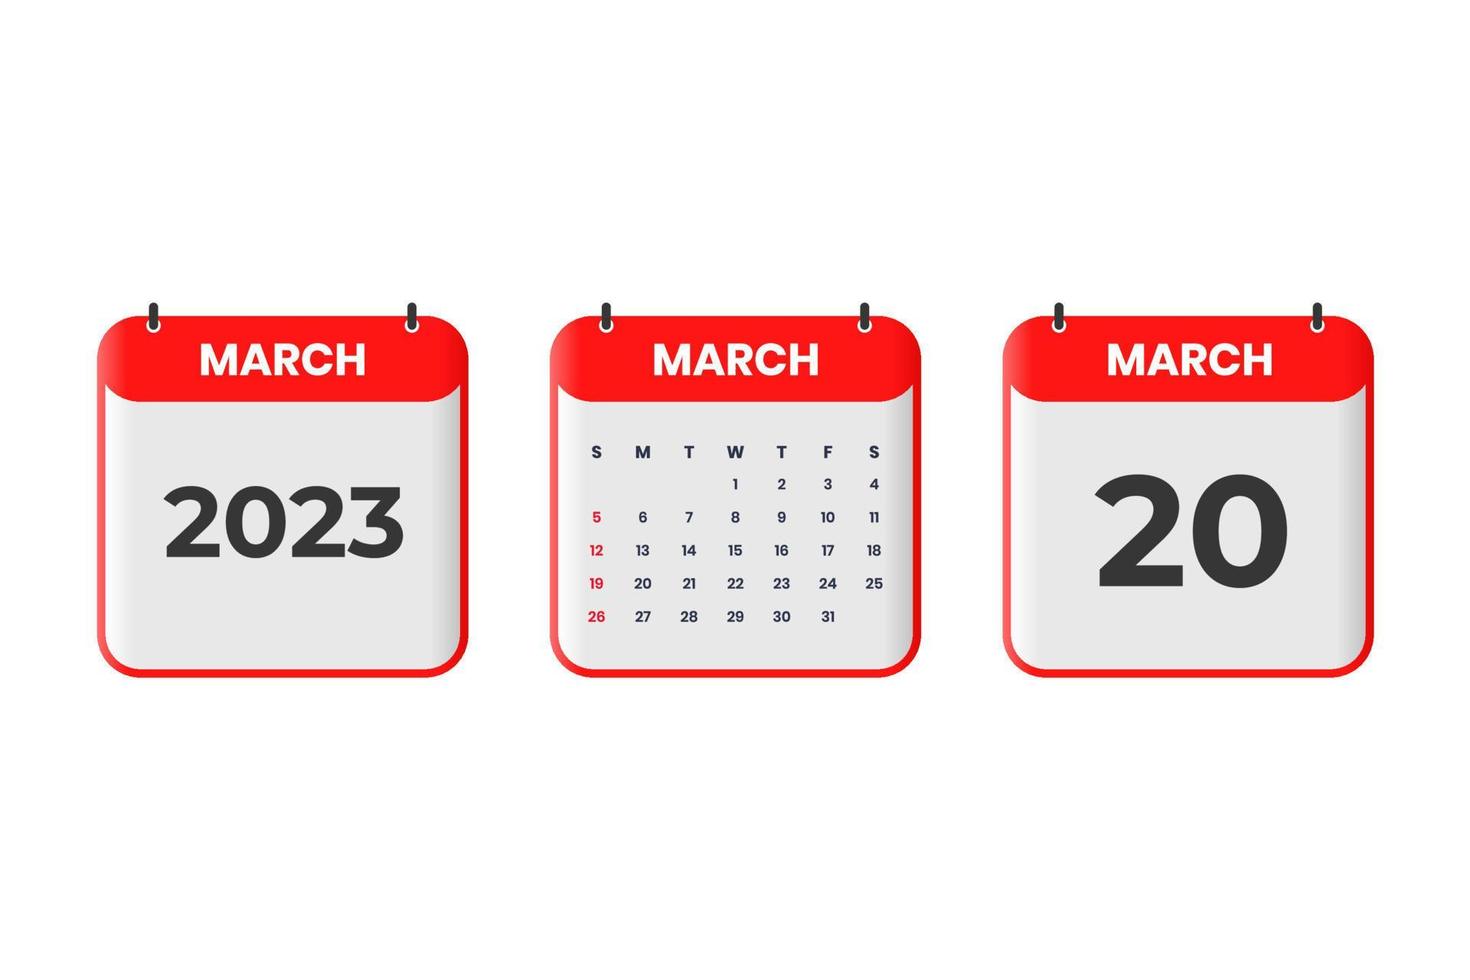 Mars 2023 kalender design. 20:e Mars 2023 kalender ikon för schema, utnämning, Viktig datum begrepp vektor